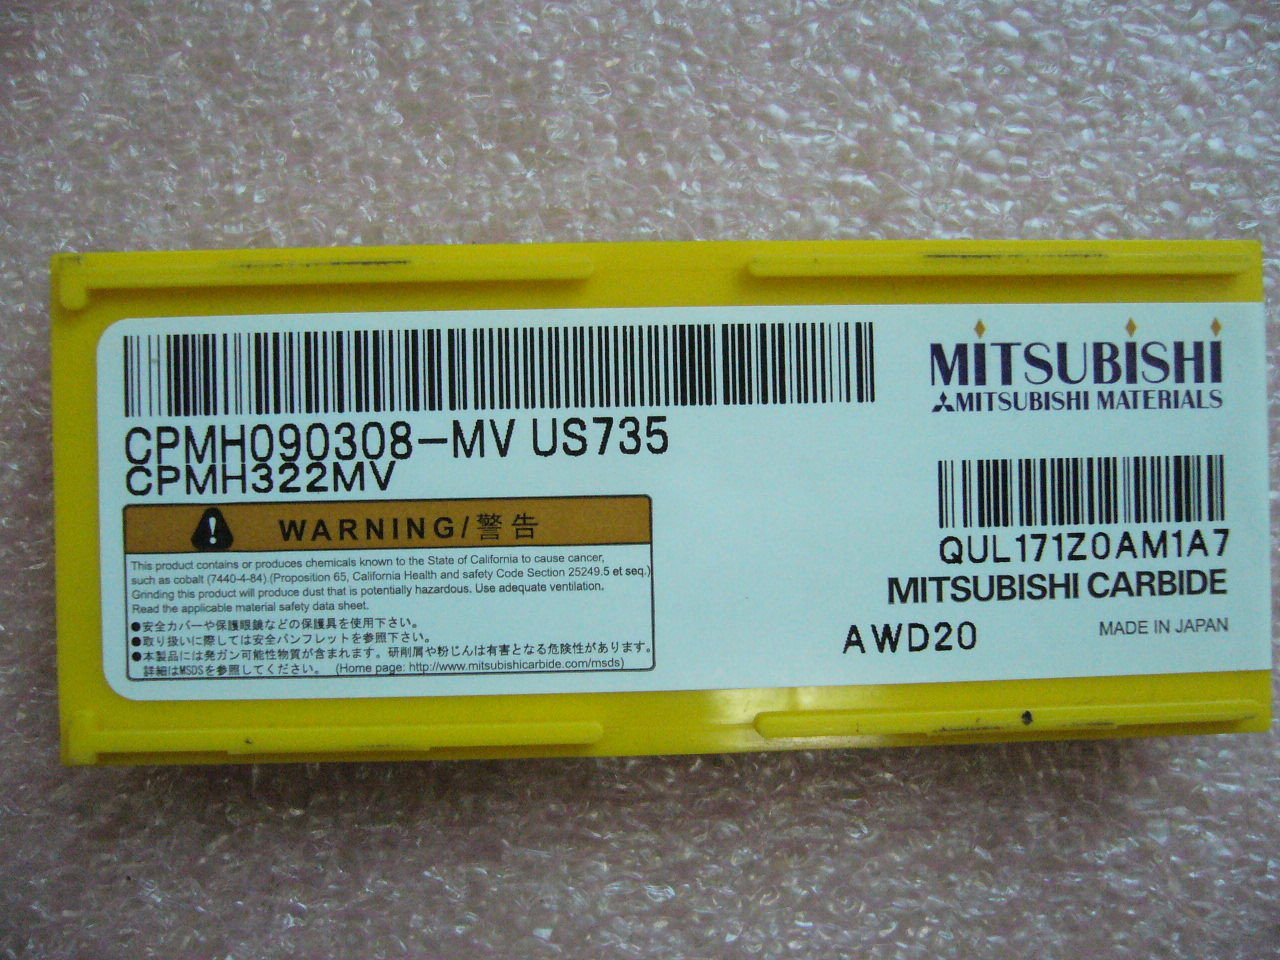 QTY 10x Mitsubishi CPMH322MV CPMH090308-MV US735 NEW